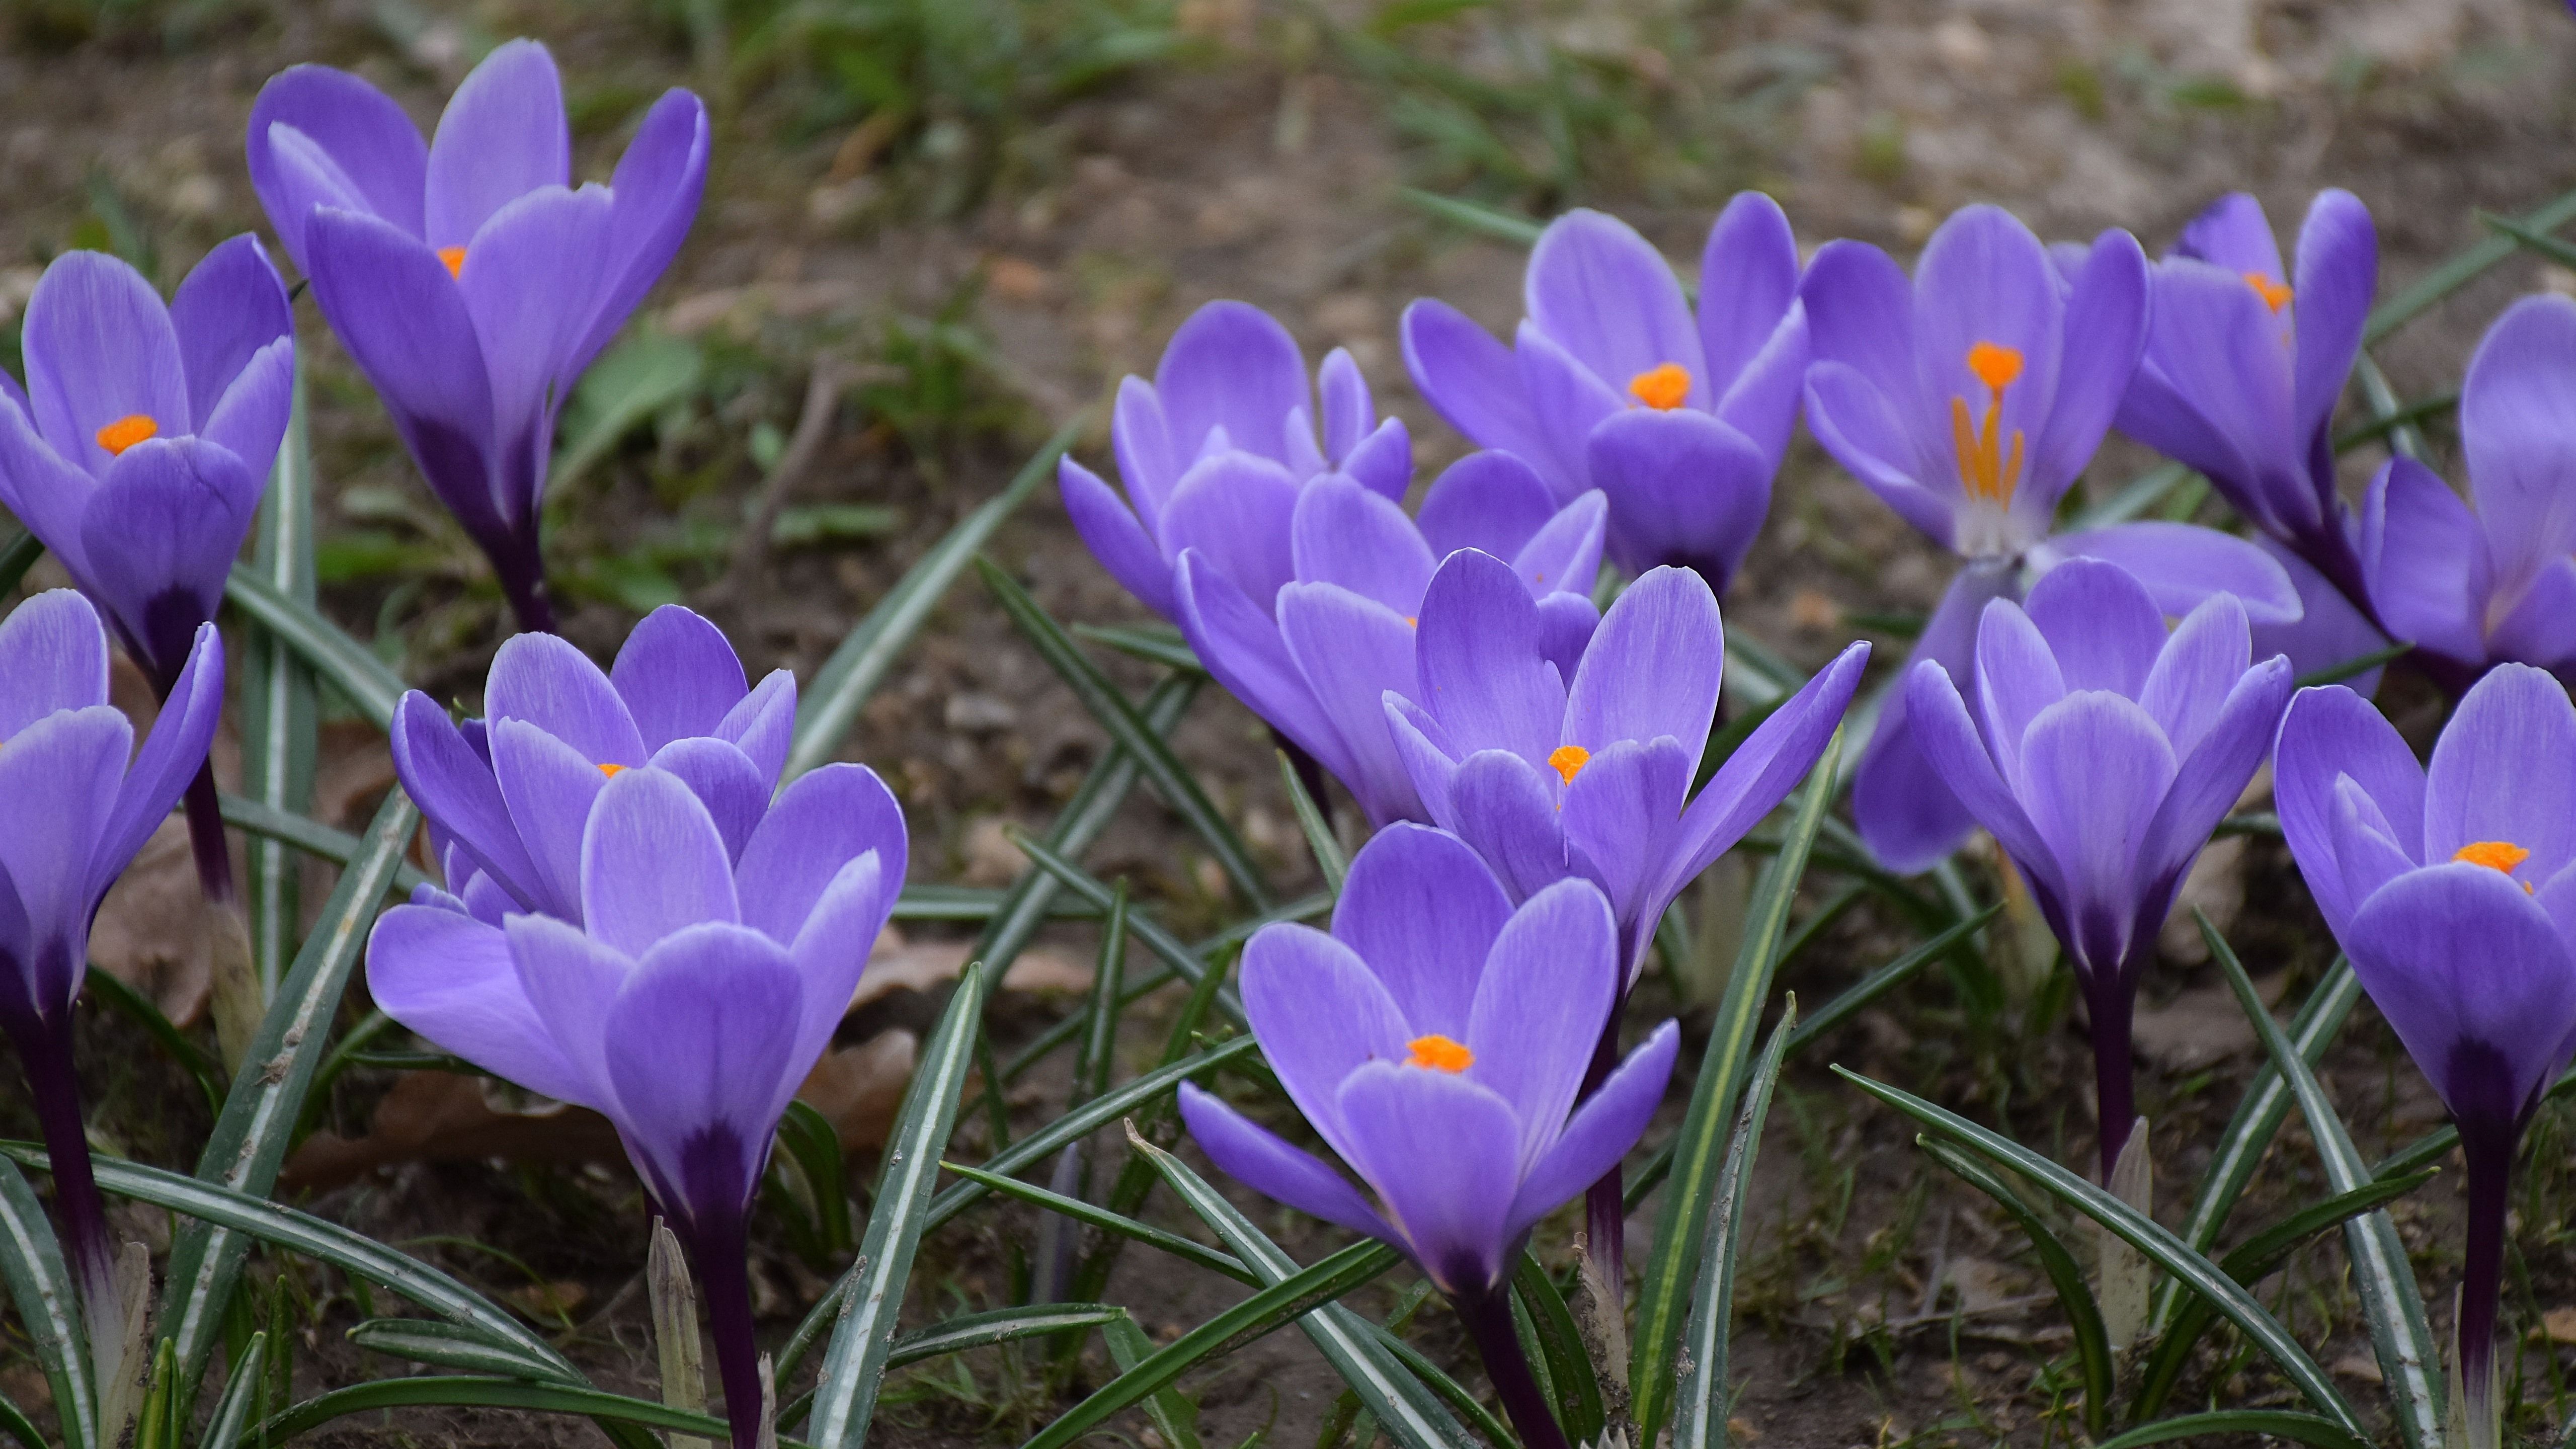 Wallpaper Purple crocuses, flowers, spring 5120x2880 UHD 5K